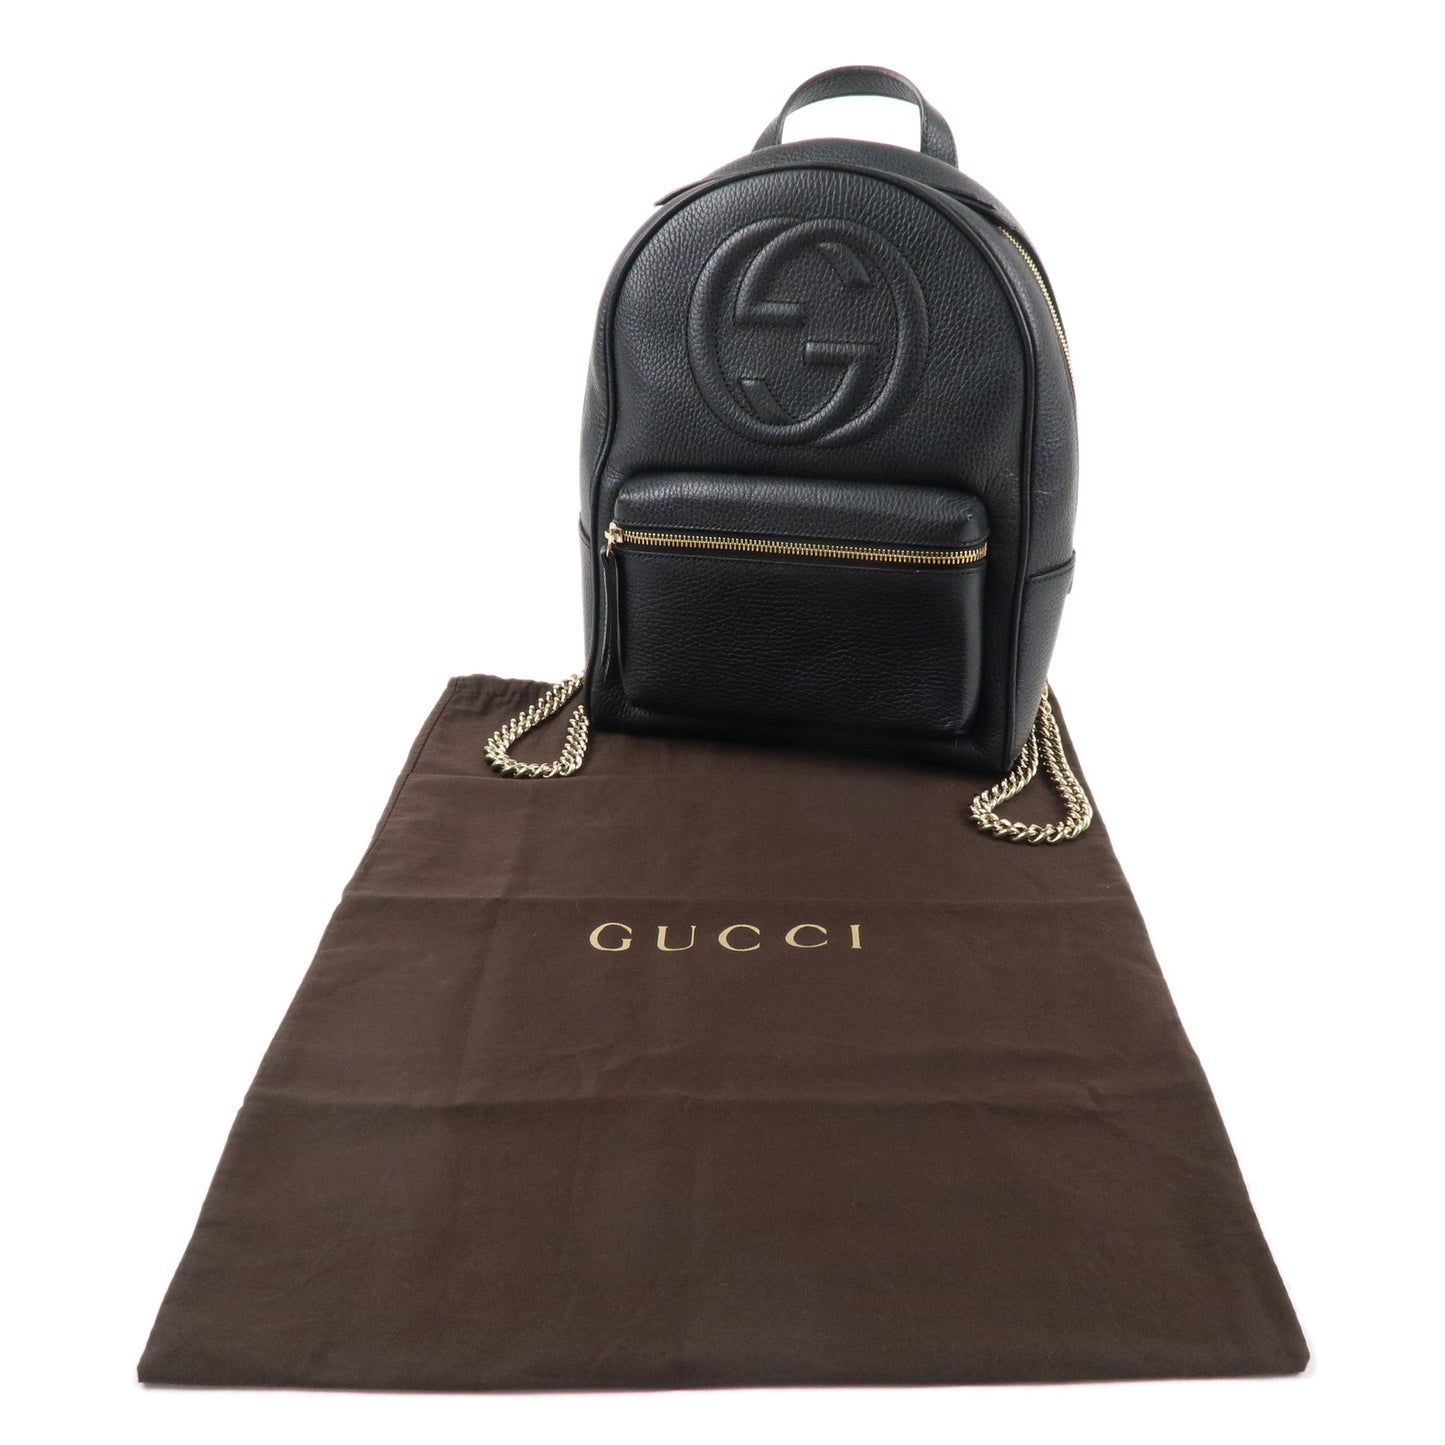 GUCCI SOHO Interlocking G Leather Backpack Black 536192